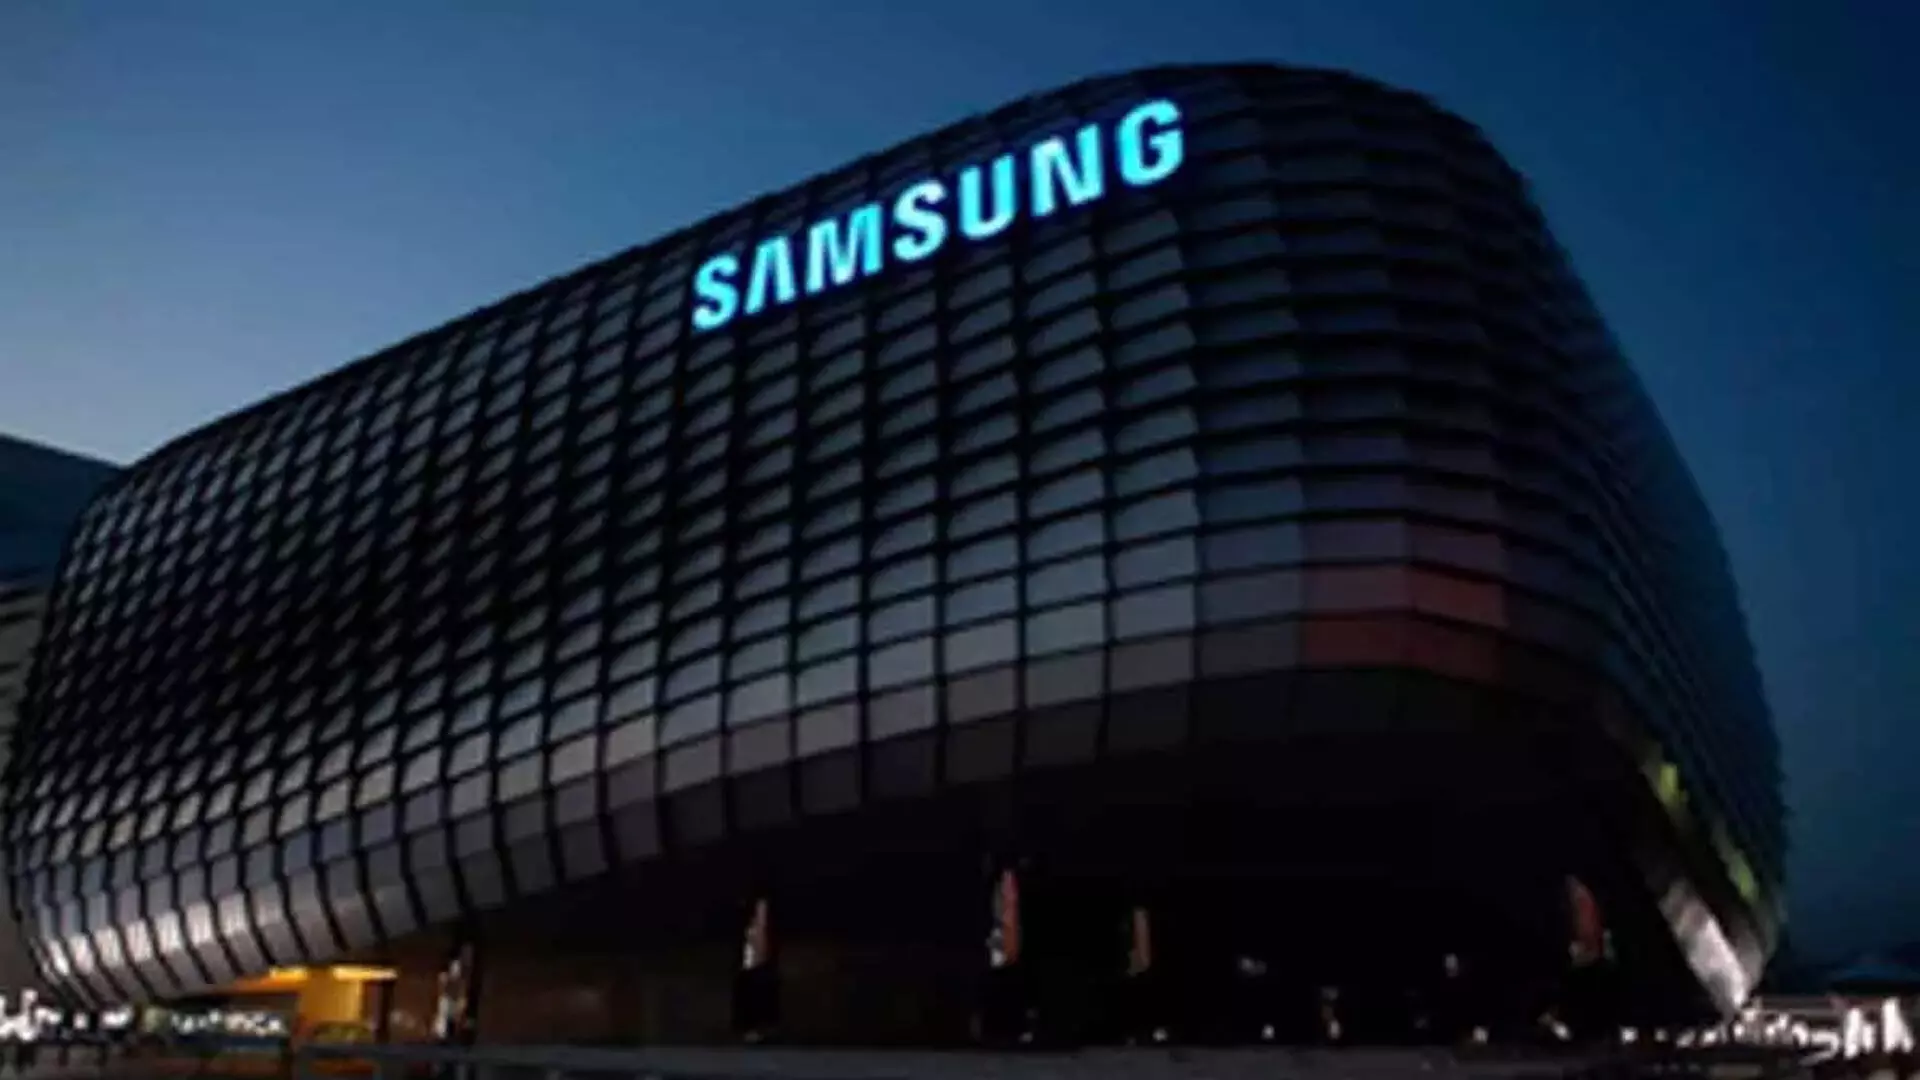 Samsung में यूनियनकृत कर्मचारी अगले सप्ताह 3 दिवसीय हड़ताल करेंगे